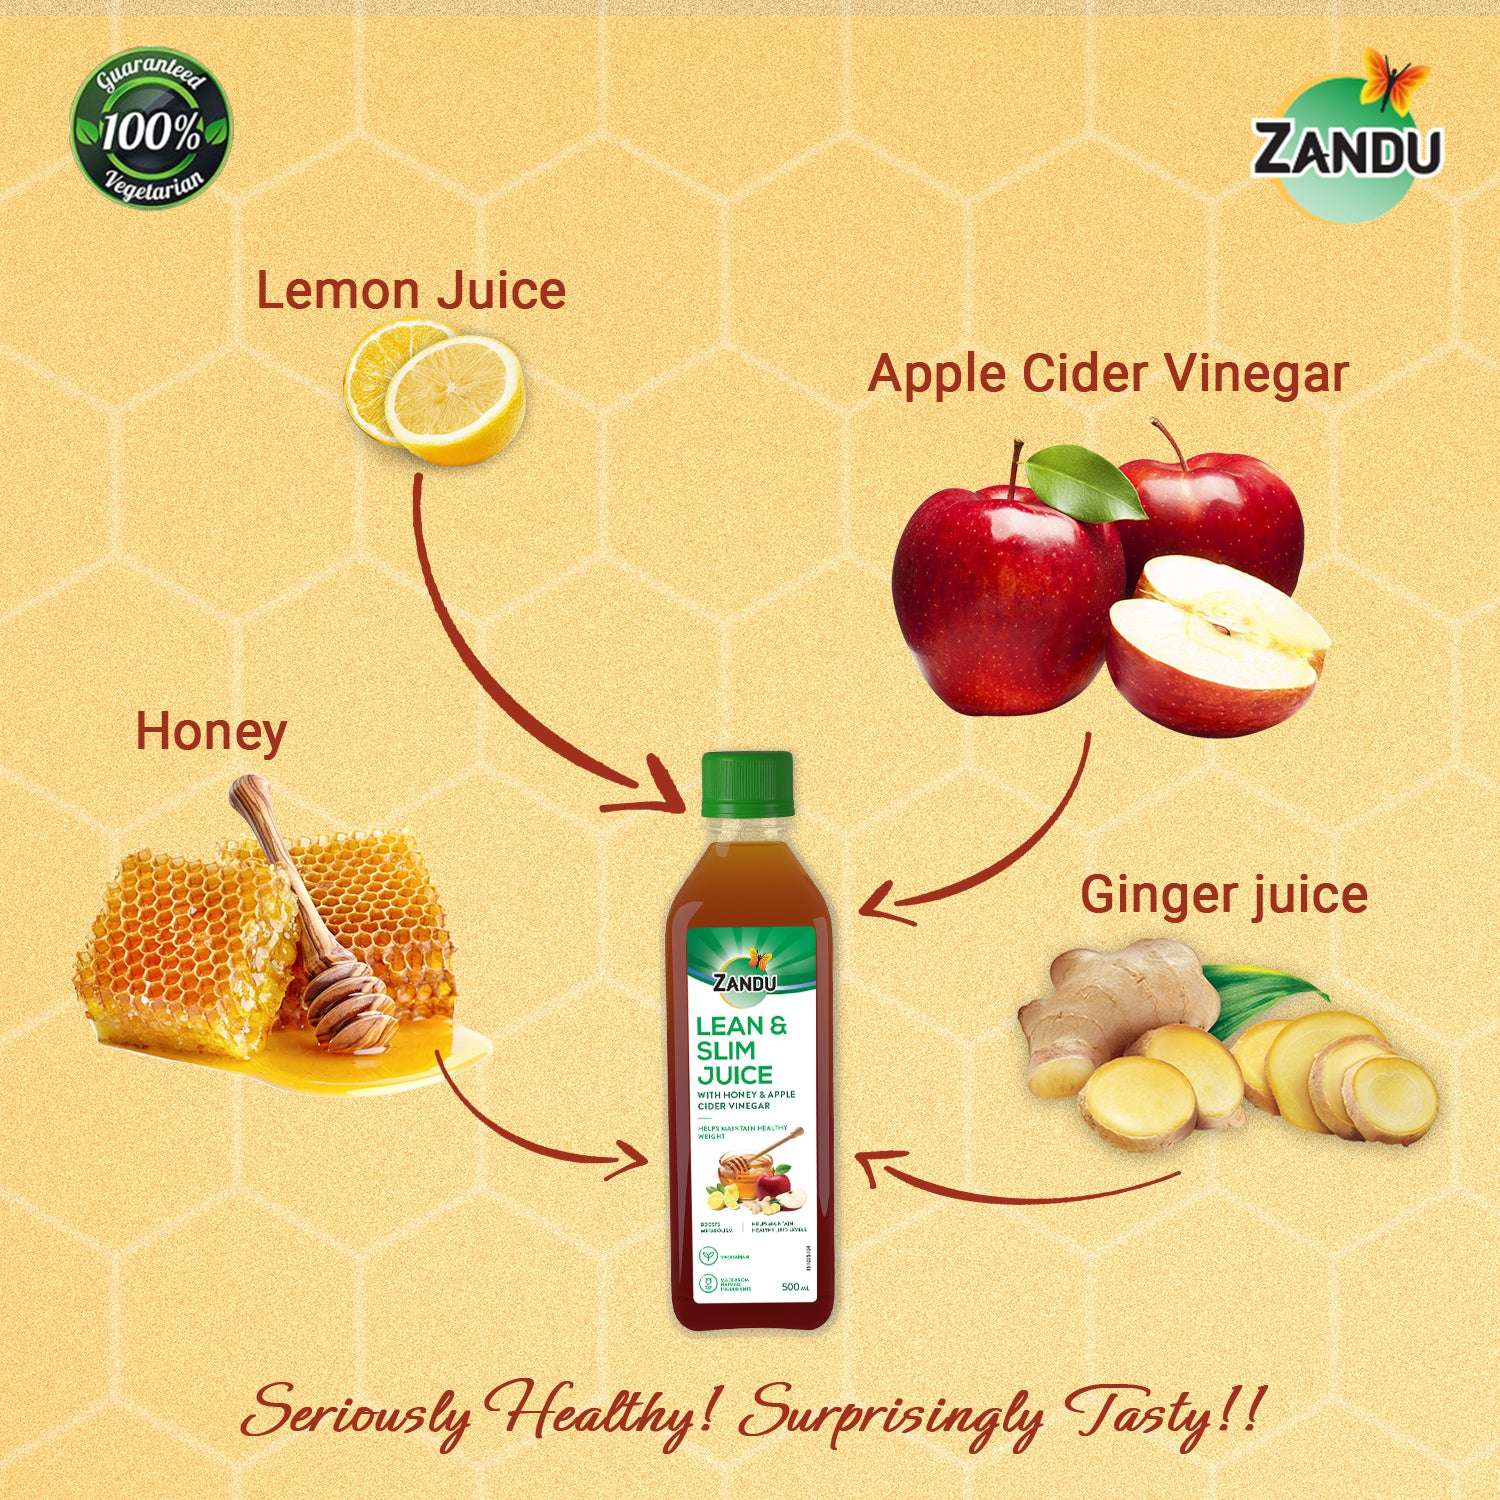 Zandu Lean & Slim Weight Loss Juice (Honey & ACV) 500ml